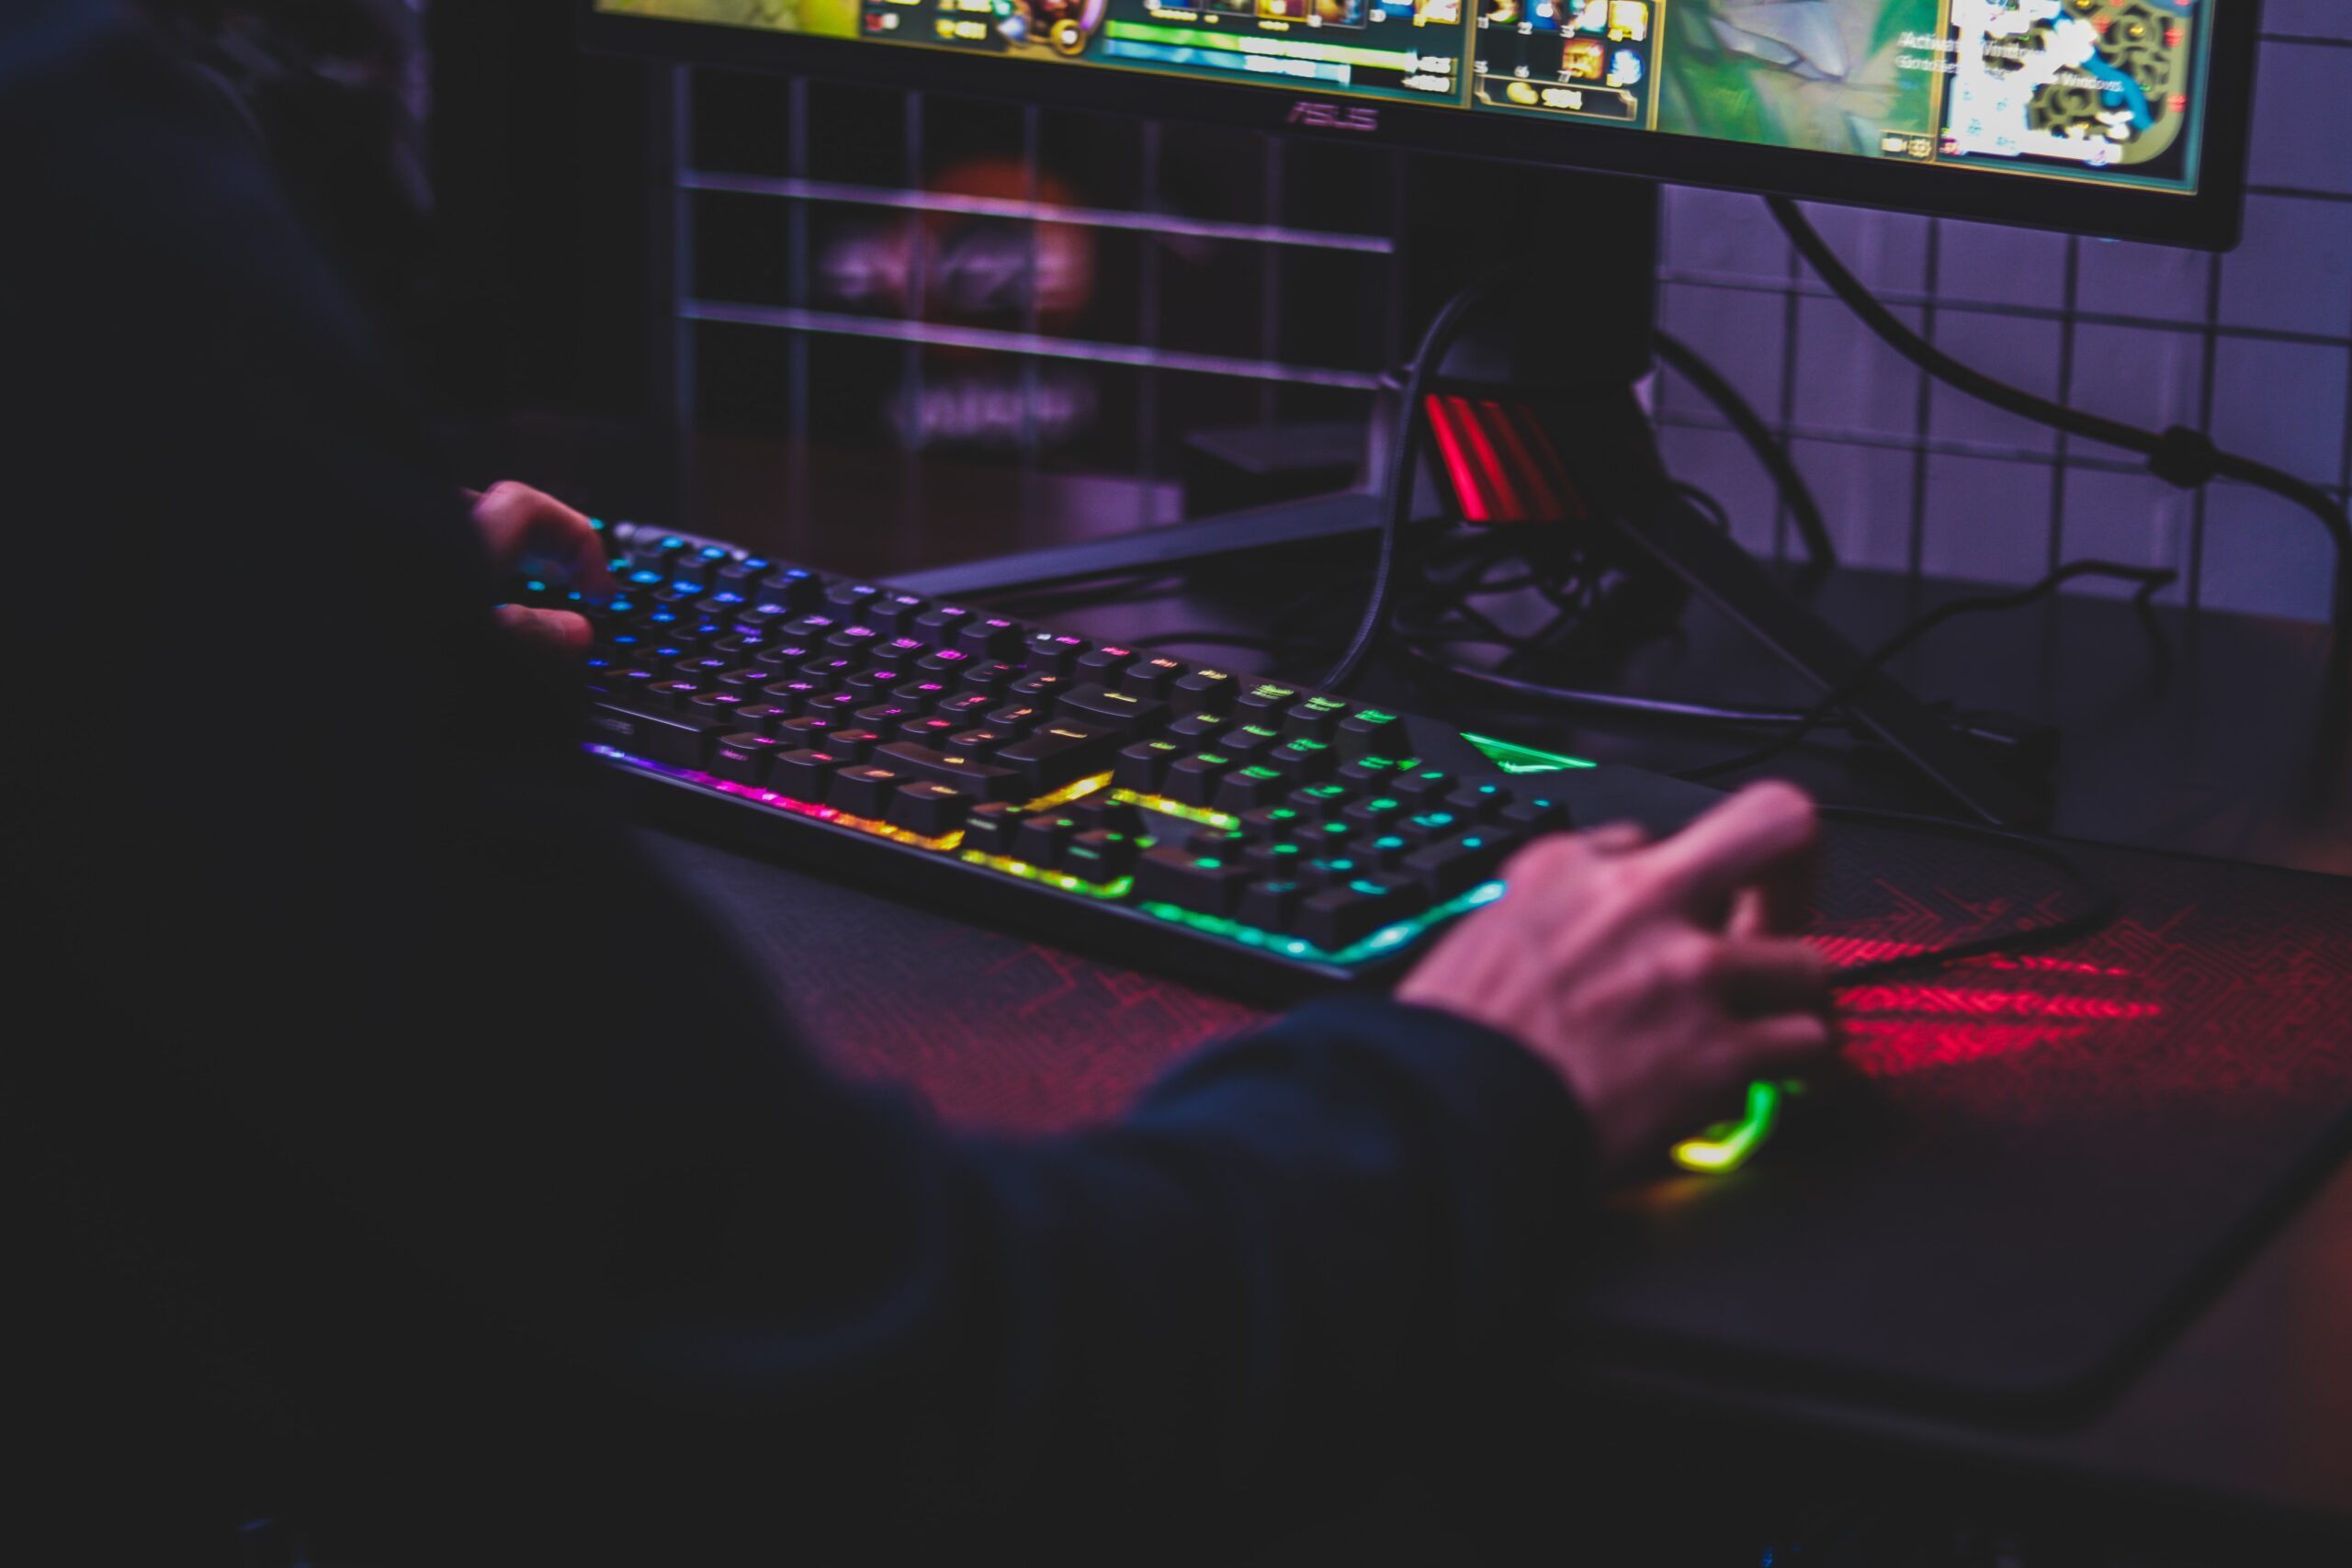 Sprzęt komputerowy, przed którym siedzi gracz, na monitorze widać, że gra w grę